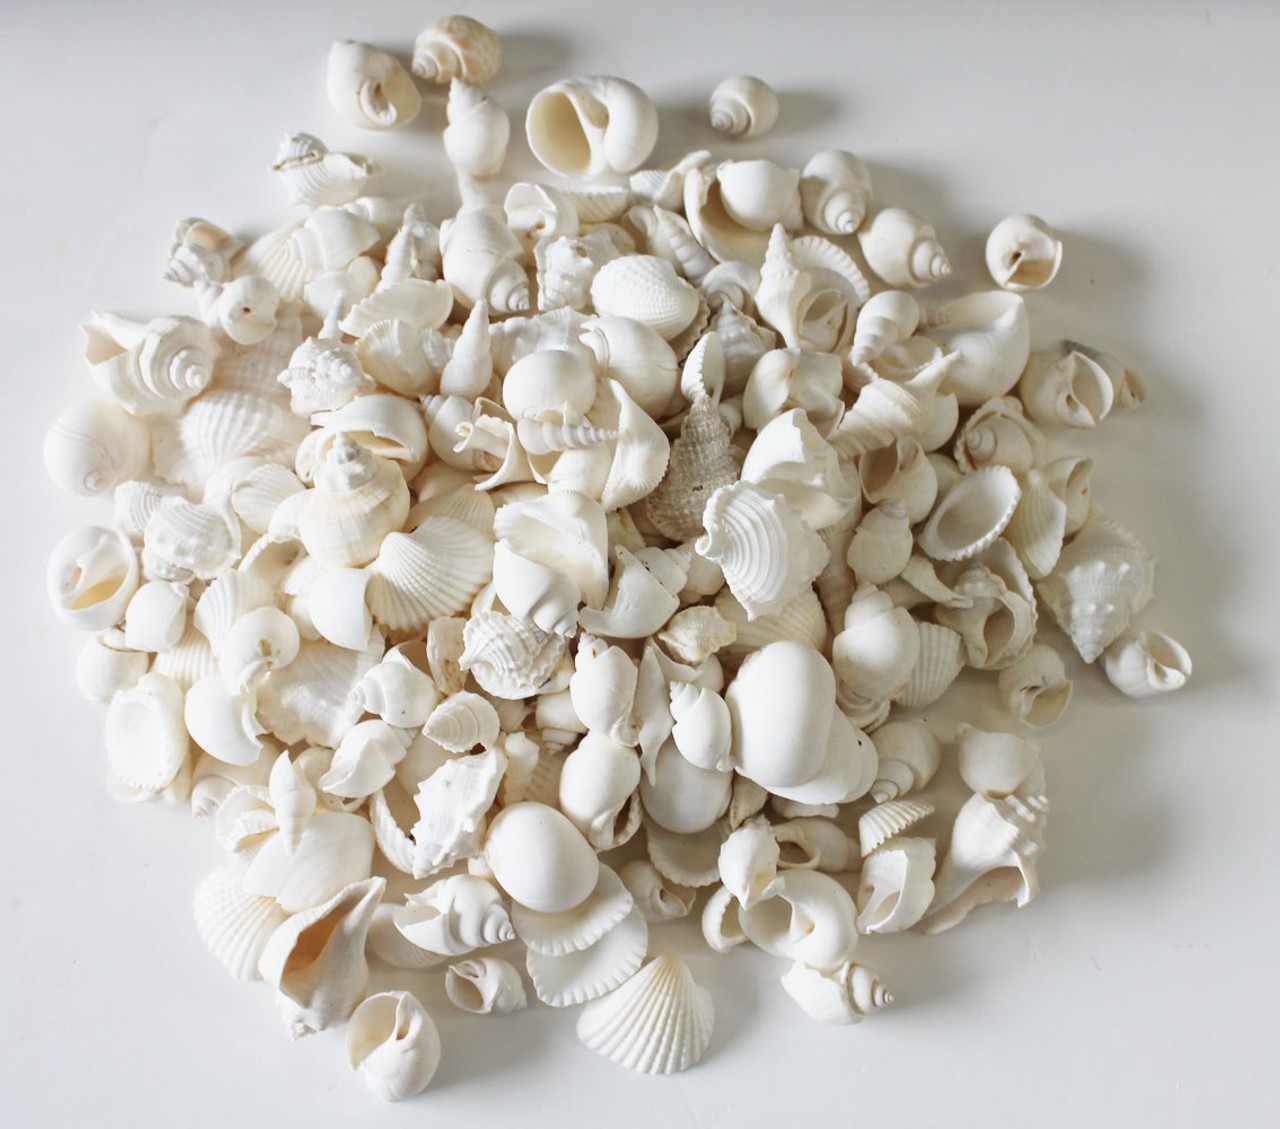 Small Shells Pebbles (White) – Cherrypick